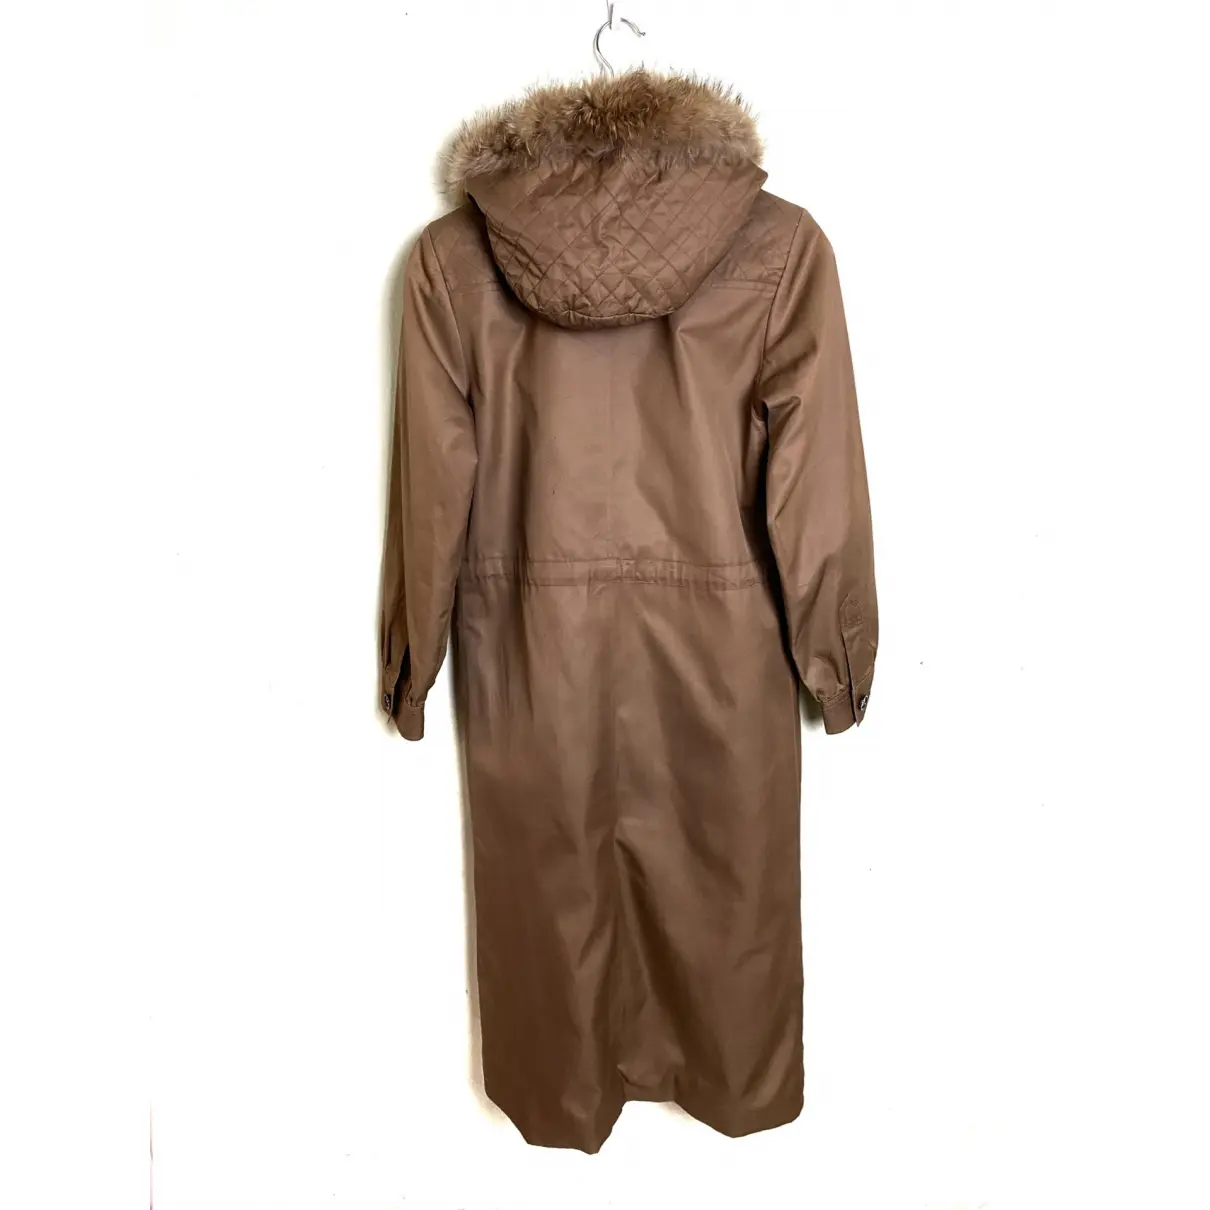 Buy Yves Saint Laurent Coat online